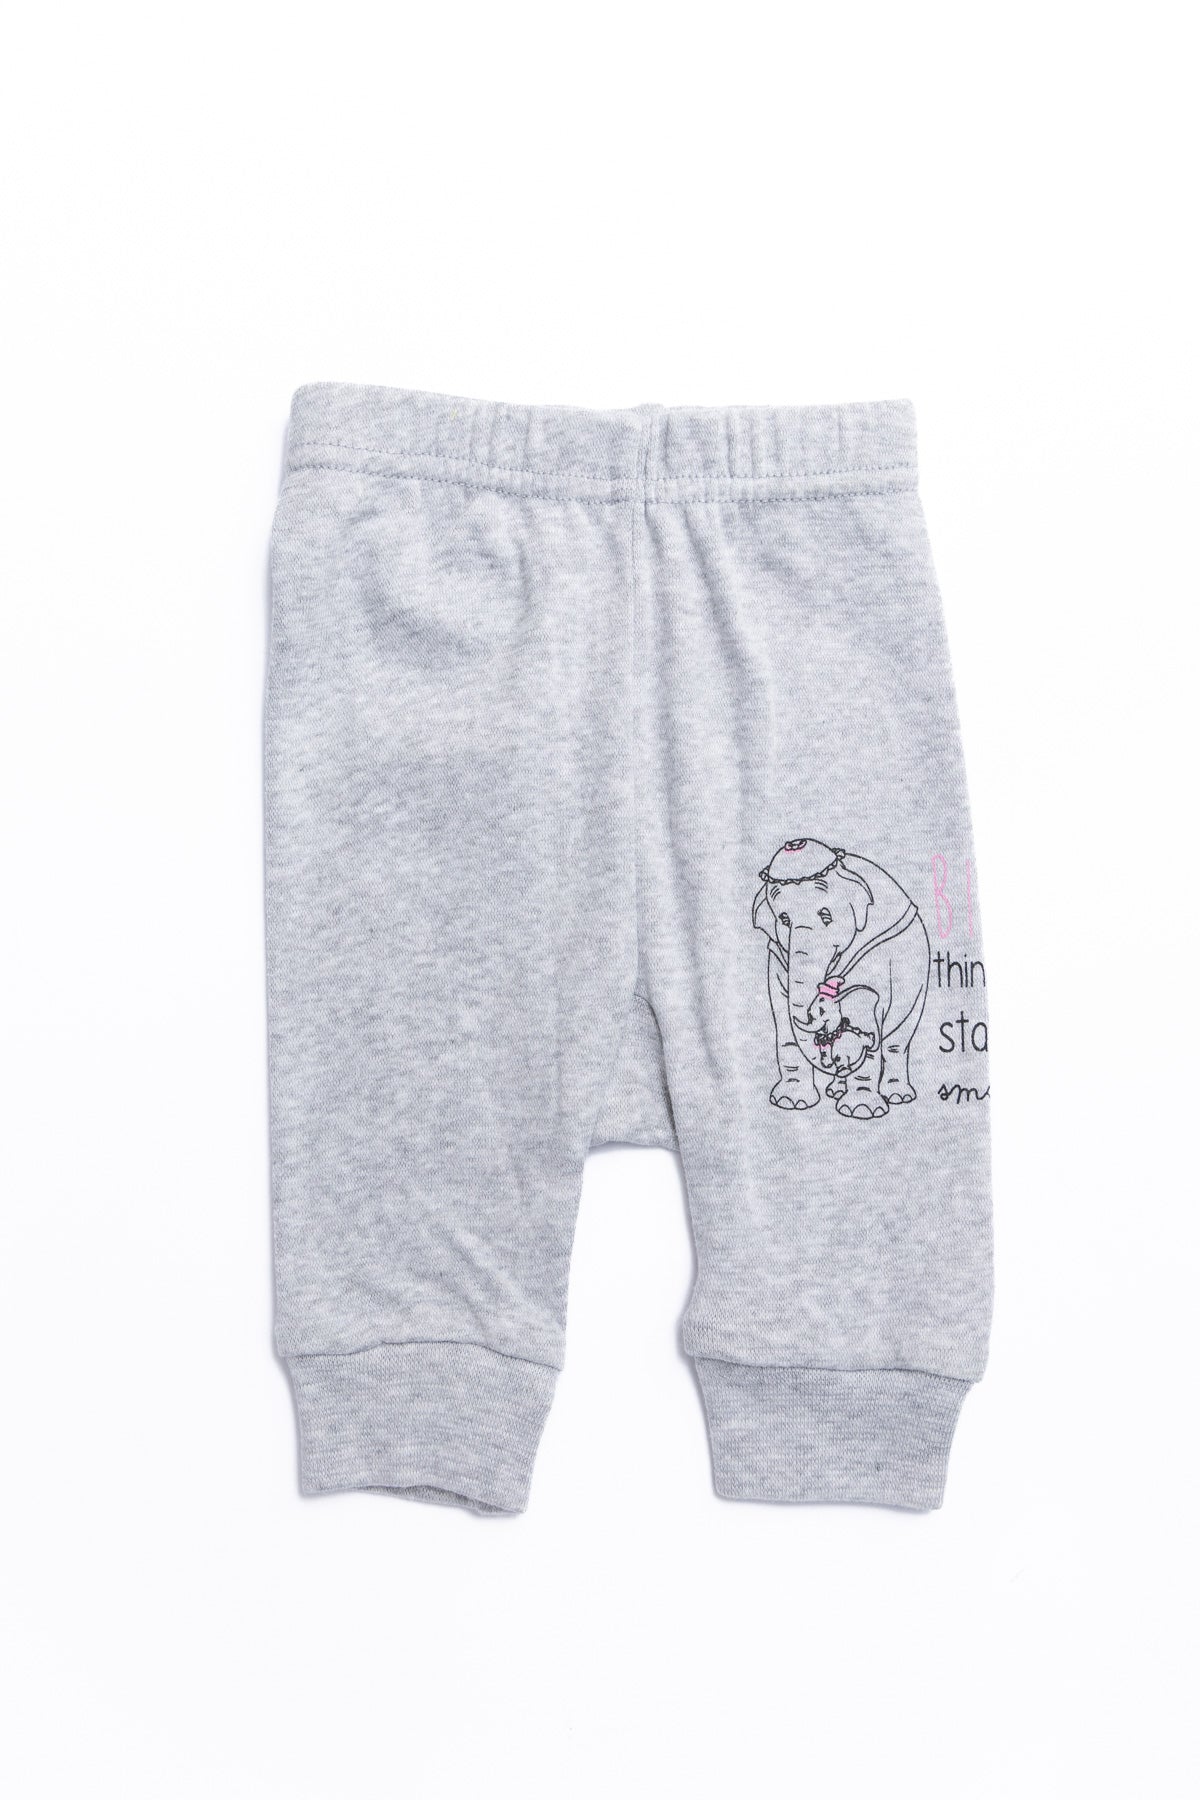 Pants Baby Dumbo " Big " 4904